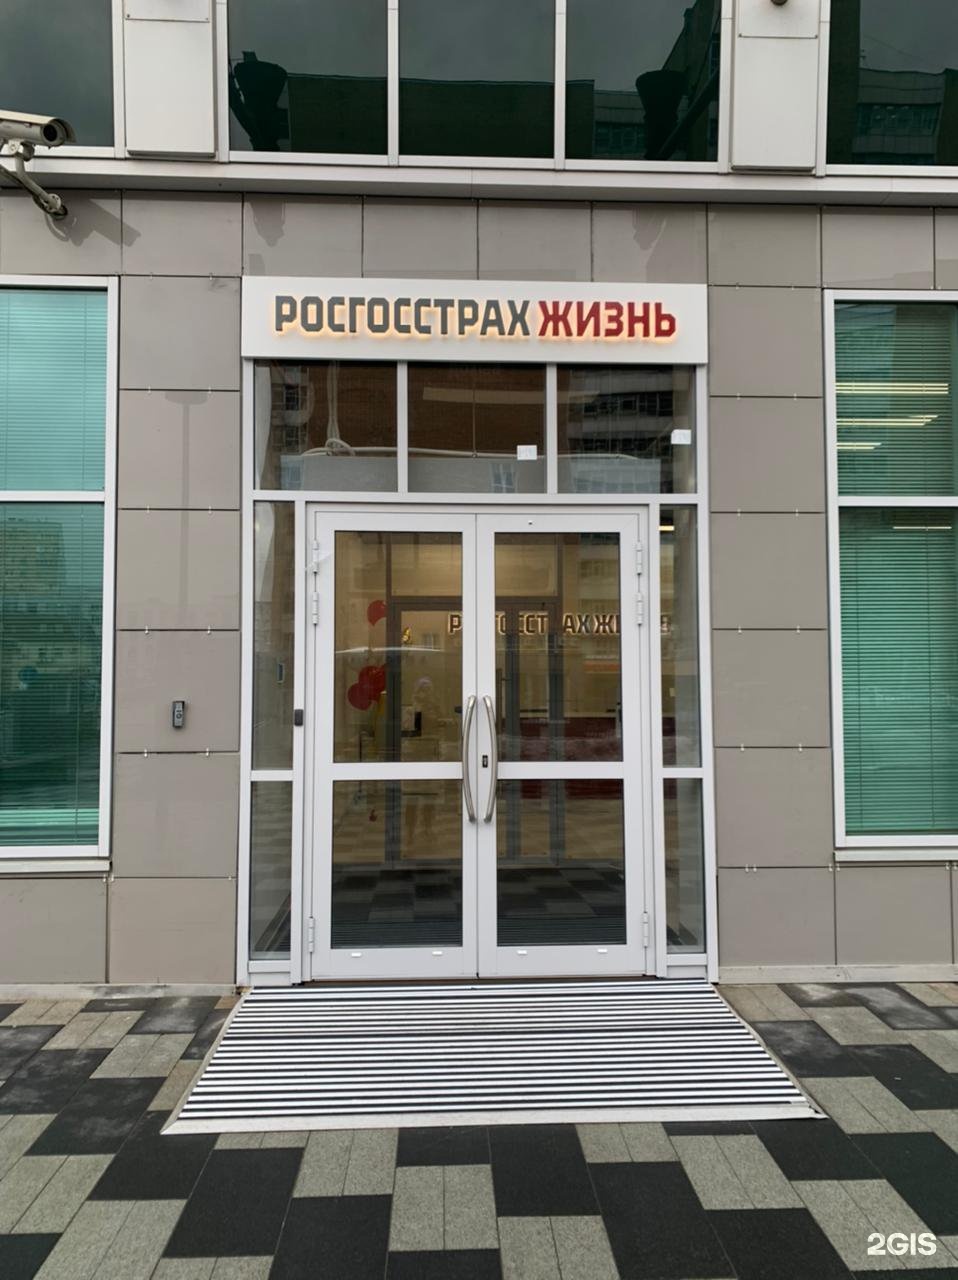 офис росгосстрах в москве на киевской